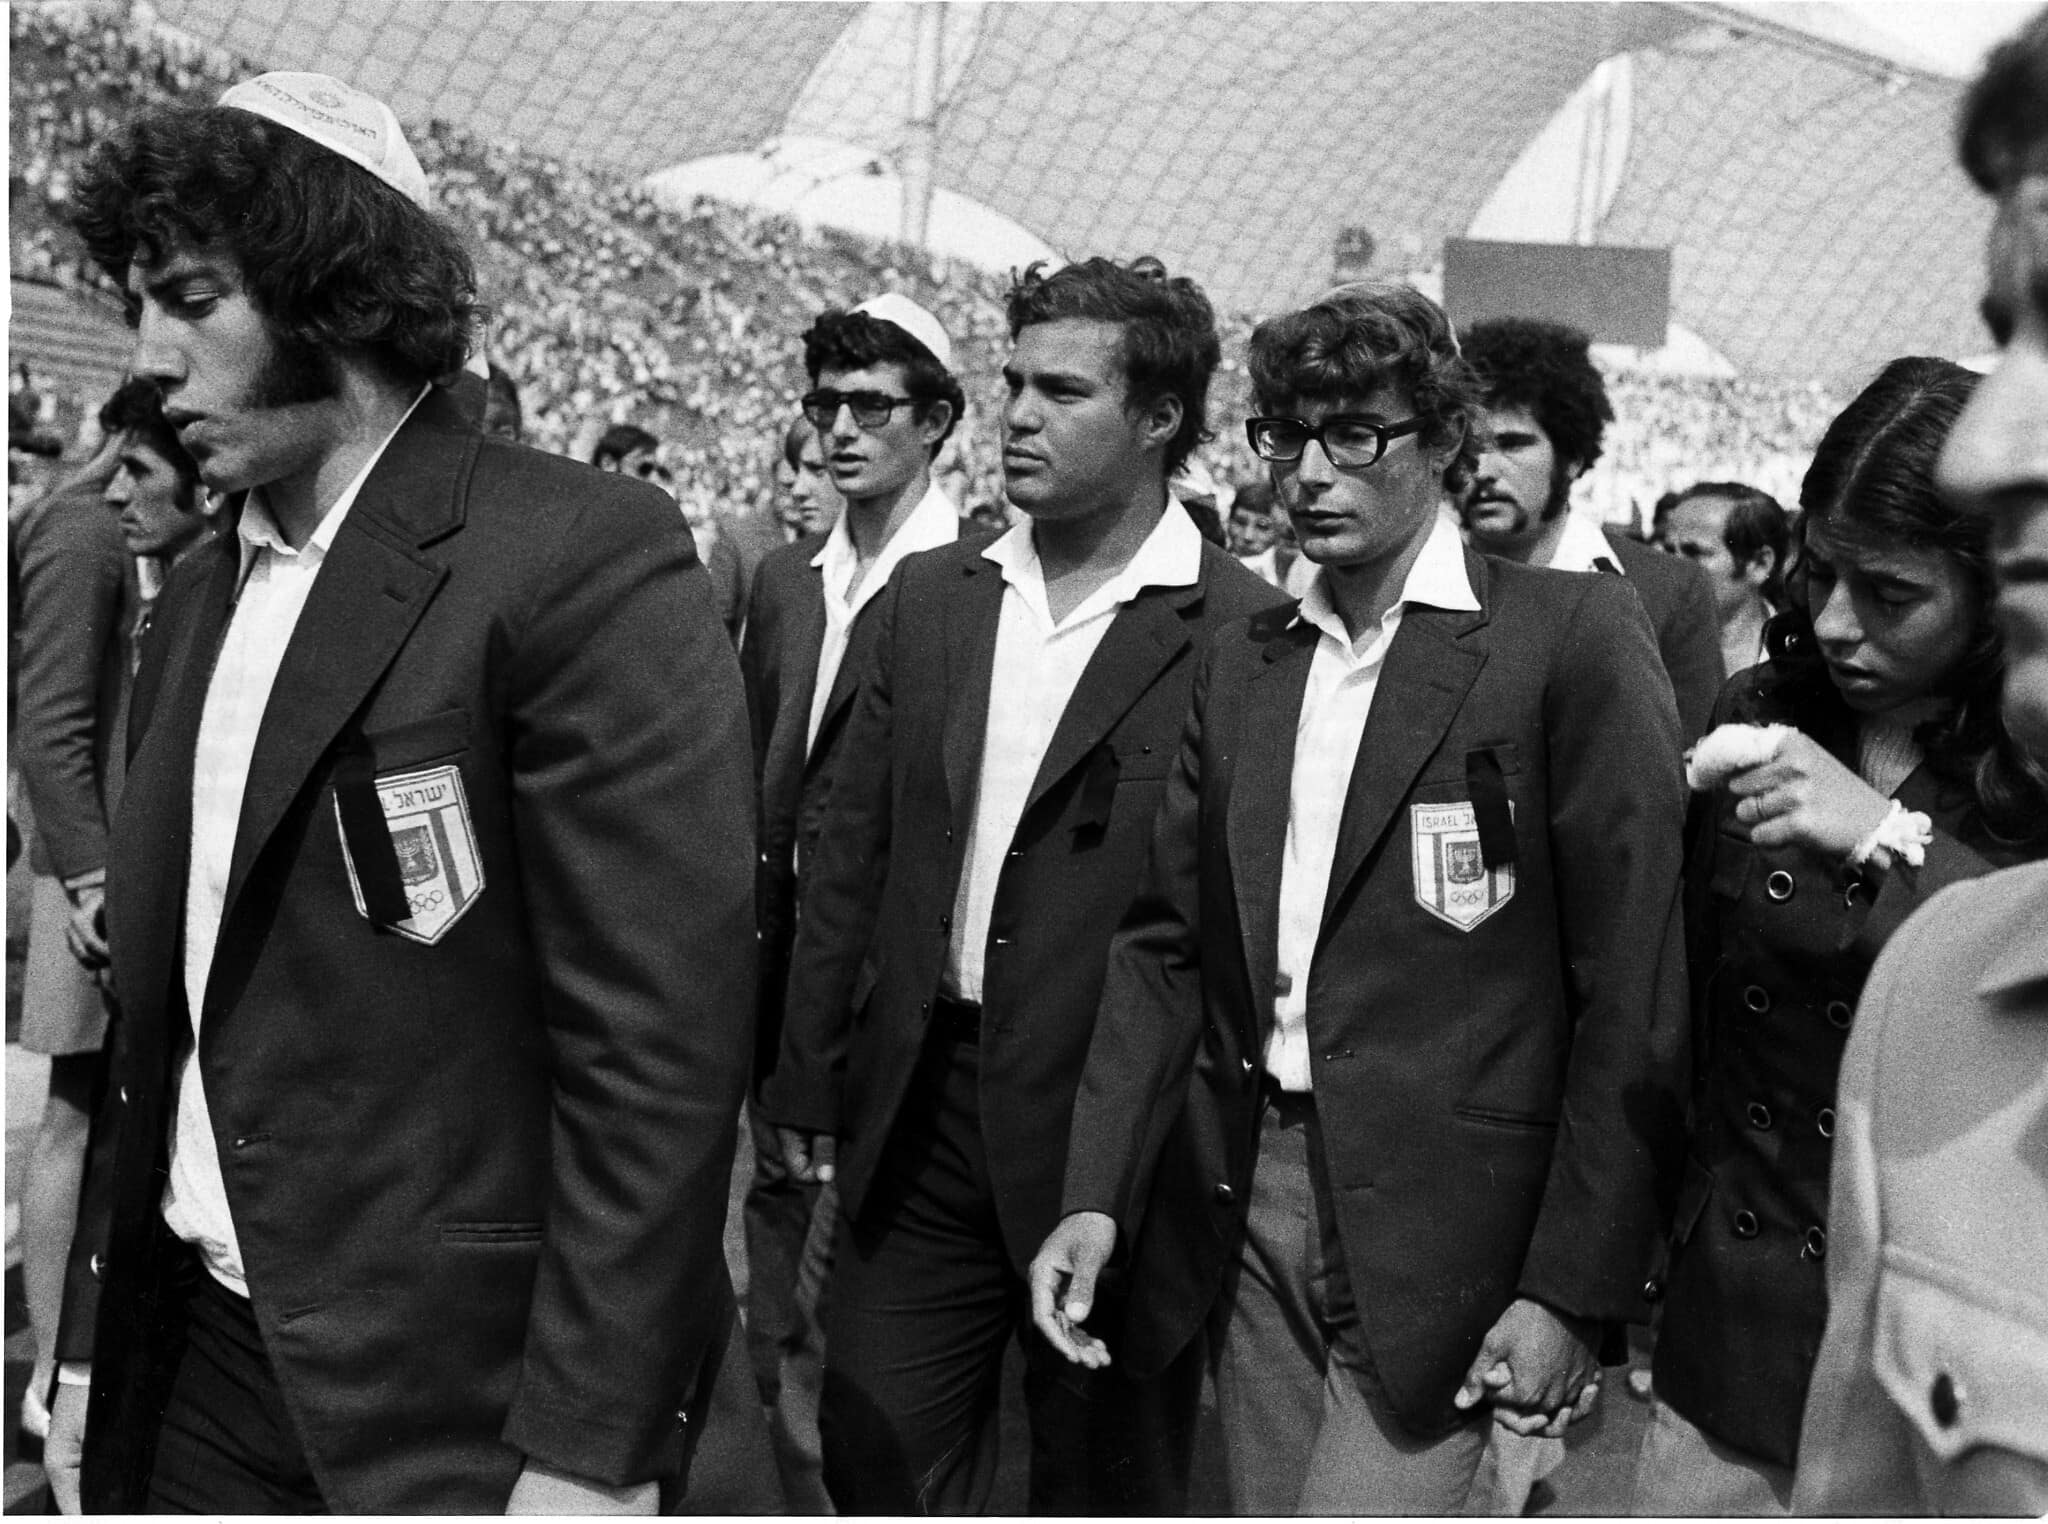 חברי המשלחת הישראלית האולימפית למינכן, לאחר רצח חבריהם בידי אנשי ארגון &quot;ספטמבר השחור&quot;, ספטמבר 1972 (צילום: AP Photo/Anonymous)